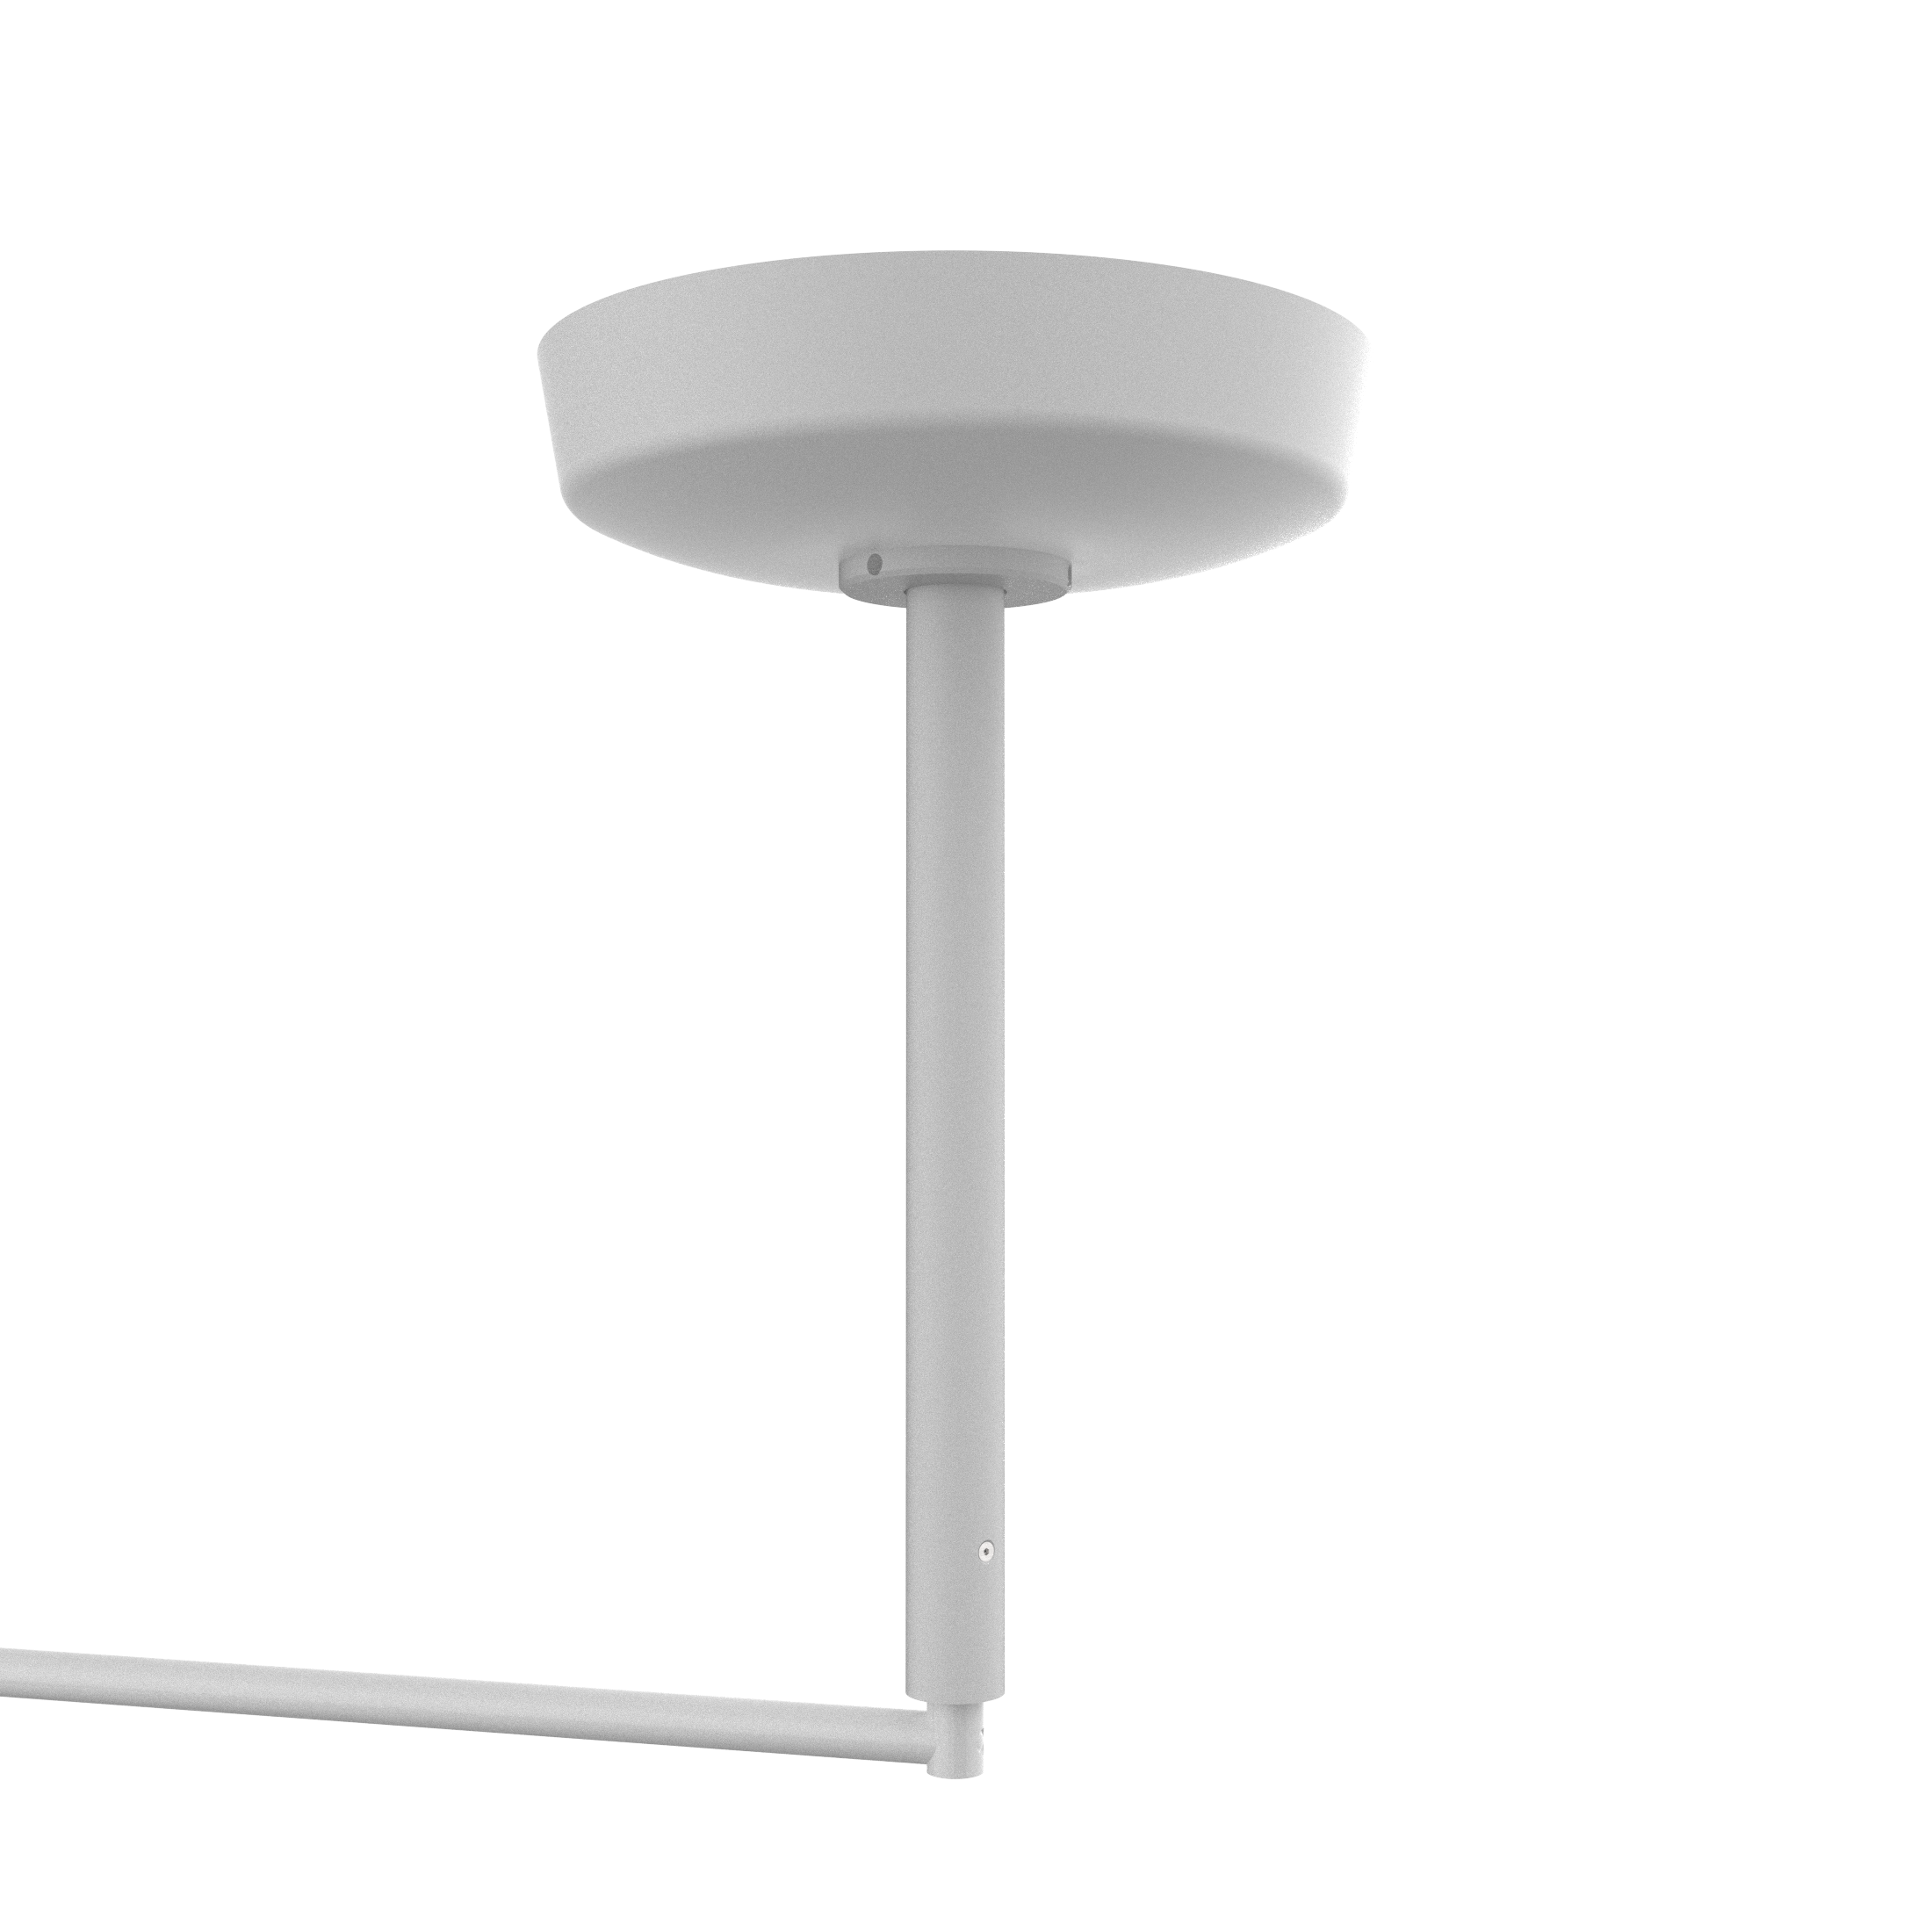 Series 1-100 - Ceiling examination lamp